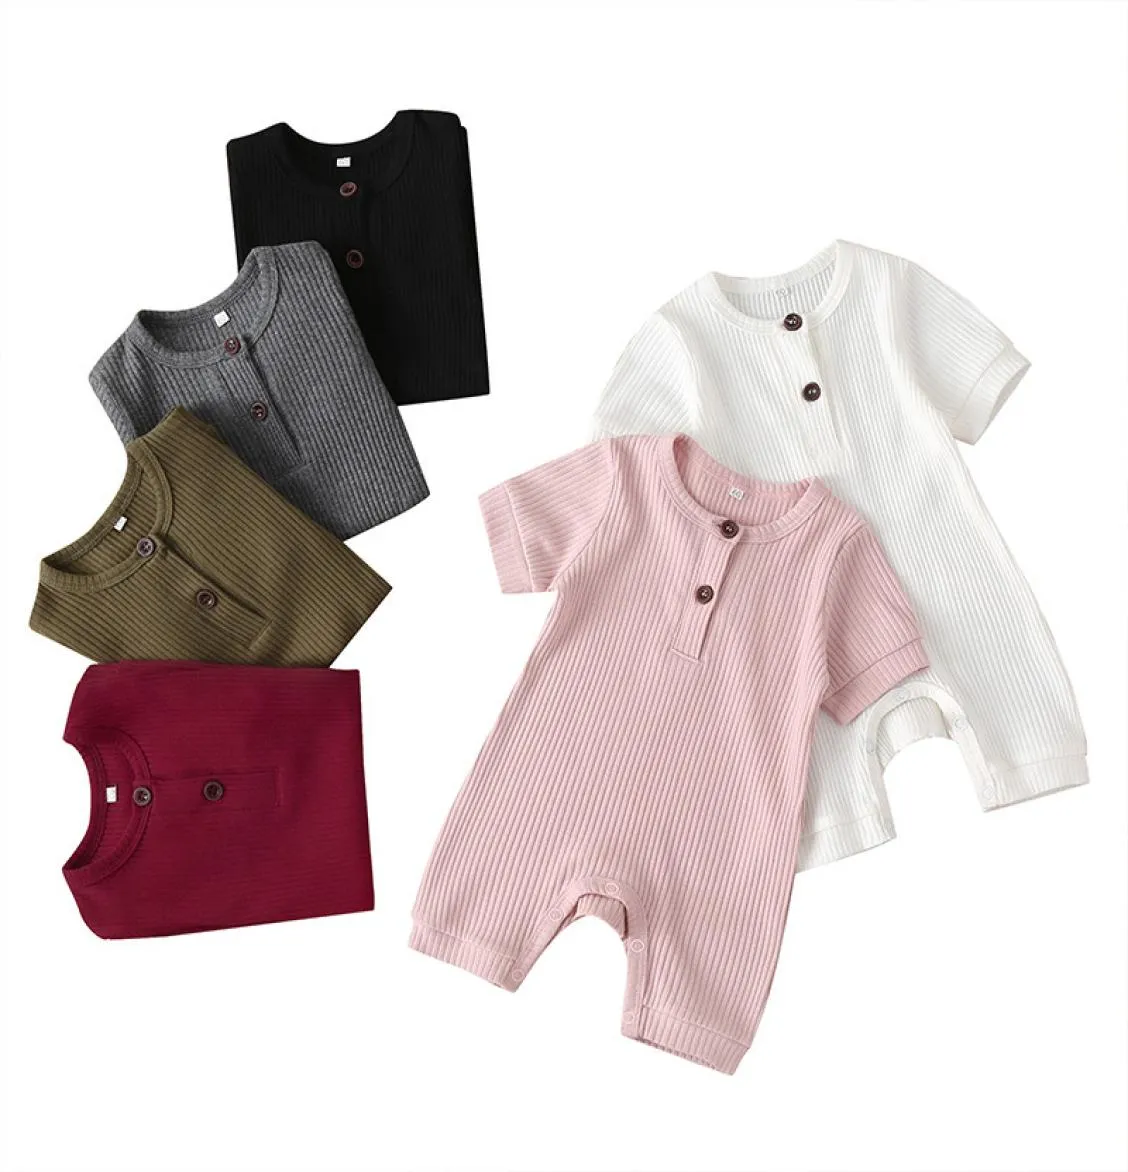 Novas roupas de bebê infantil roupas da criança macacão outfits algodão sólido meninos meninas roupas verão crianças 11 cores t8027575